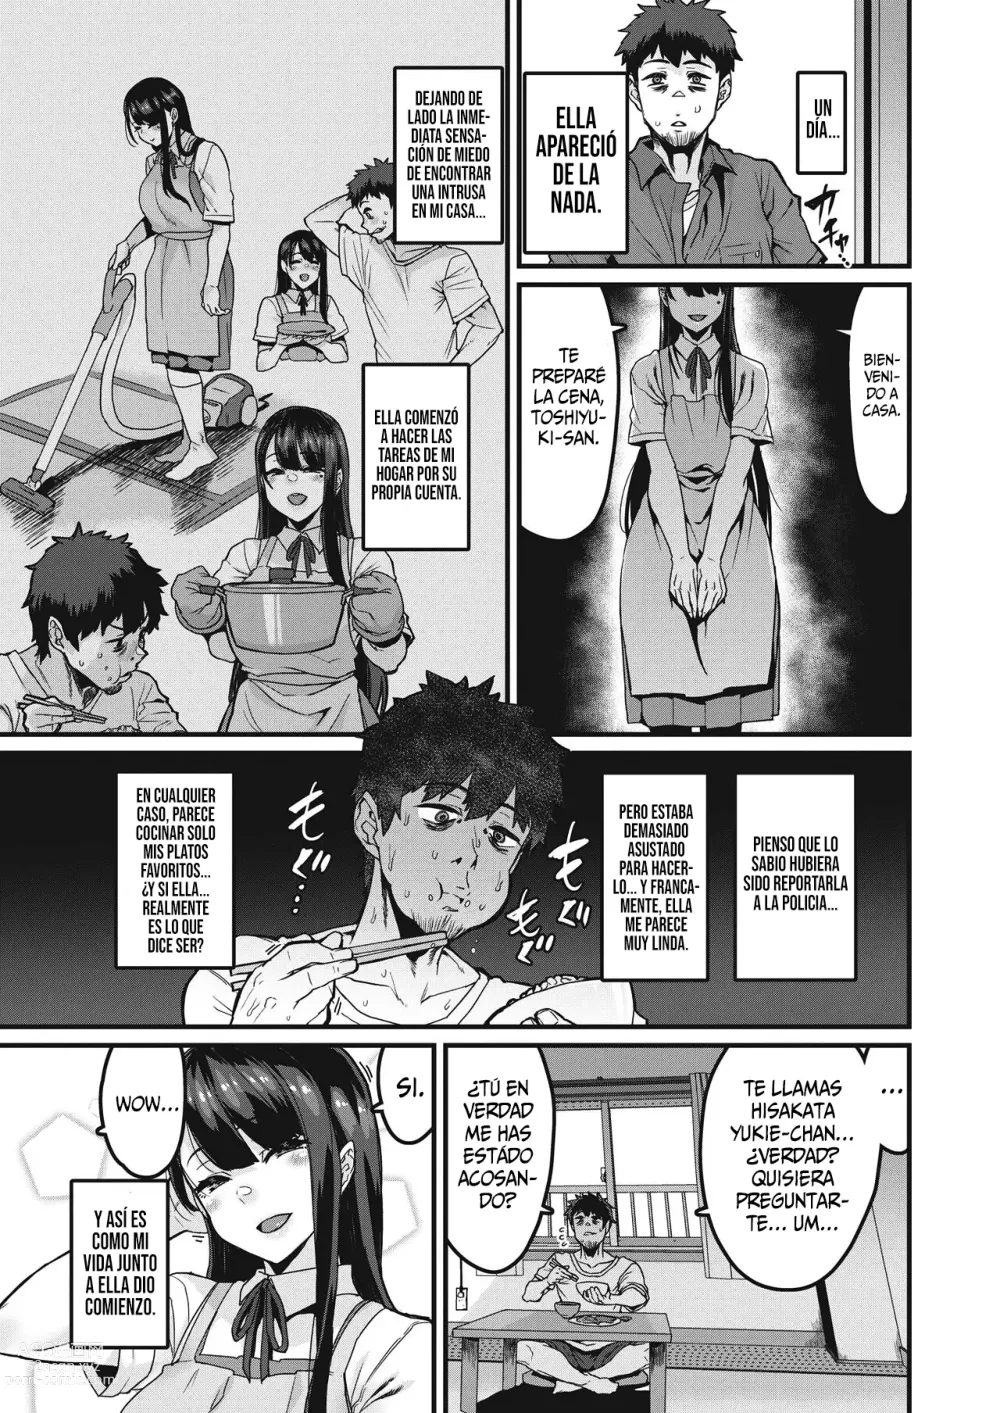 Page 3 of manga En Poco Tiempo Seras Completamente Impregnada.